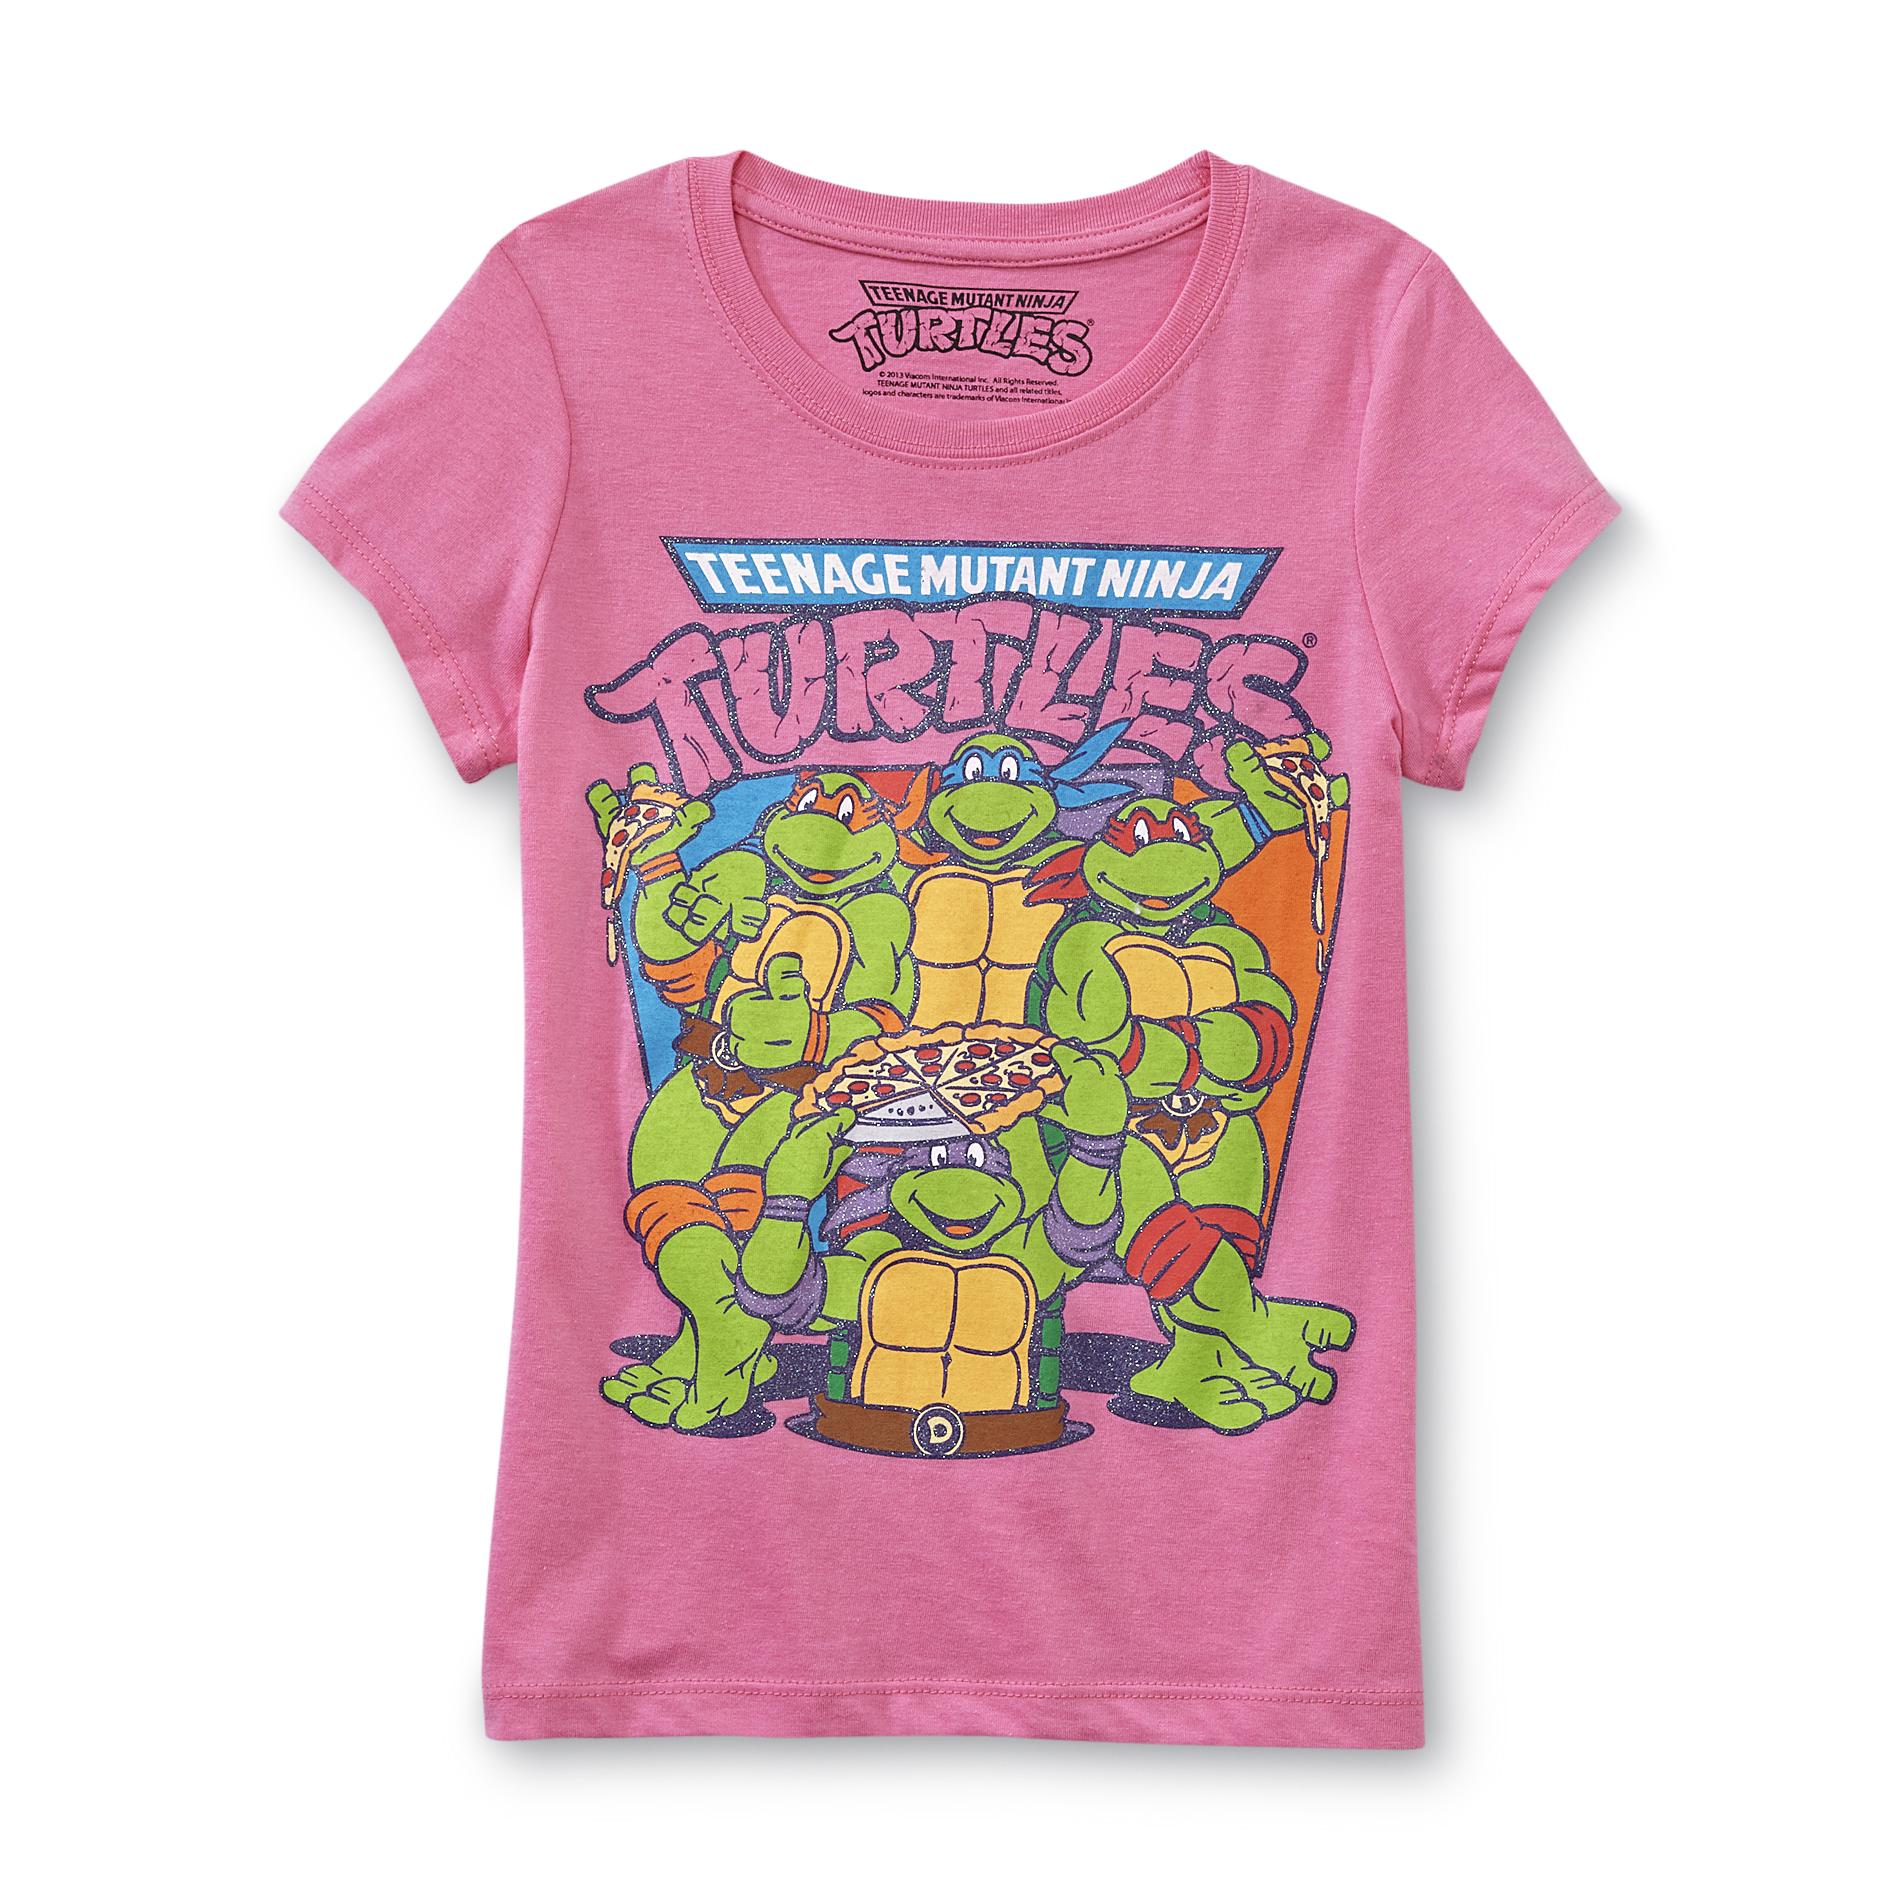 Nickelodeon Girl's Graphic T-Shirt - Teenage Mutant Ninja Turtles